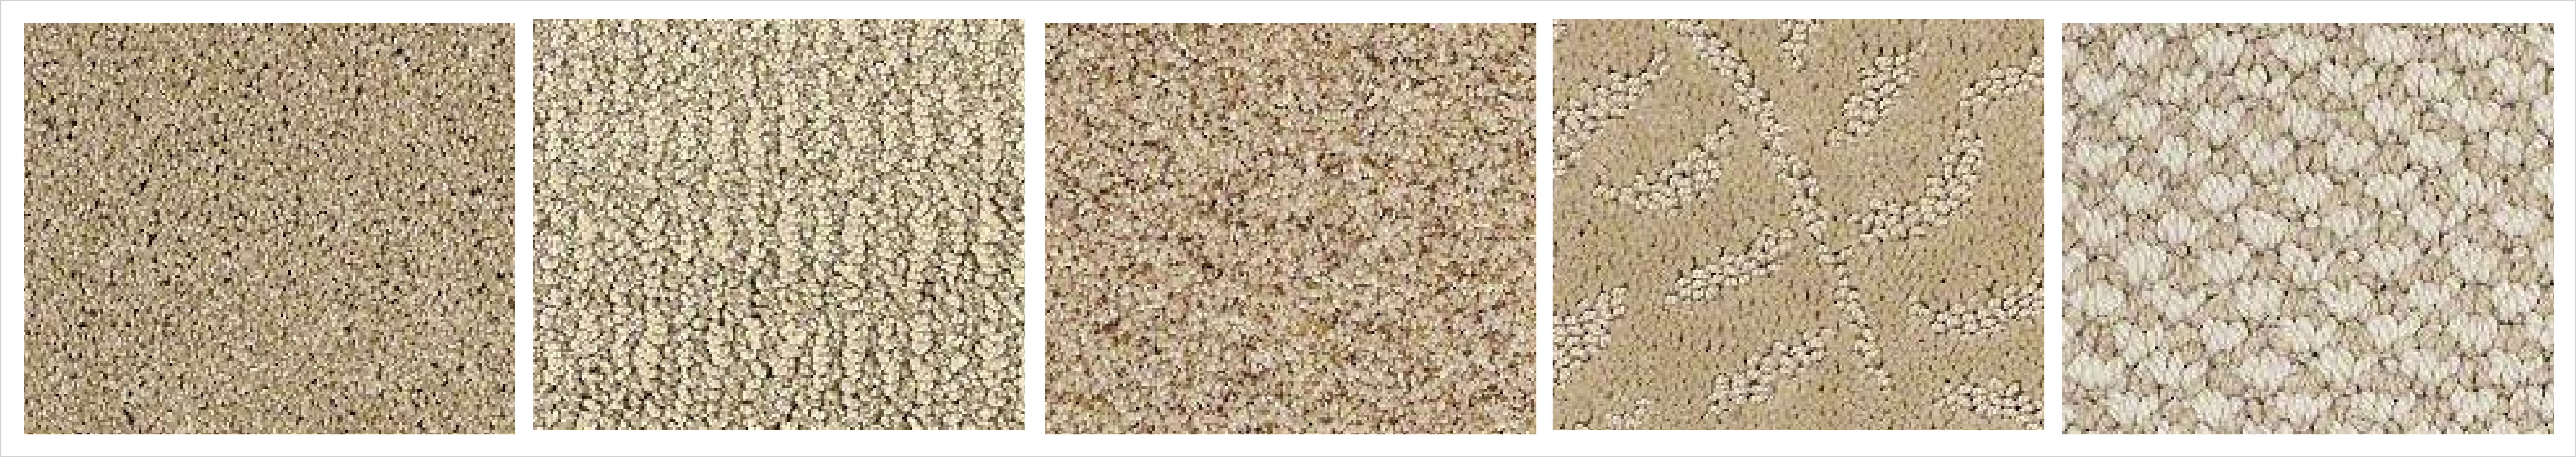 carpet styles #2 CCCDRHH